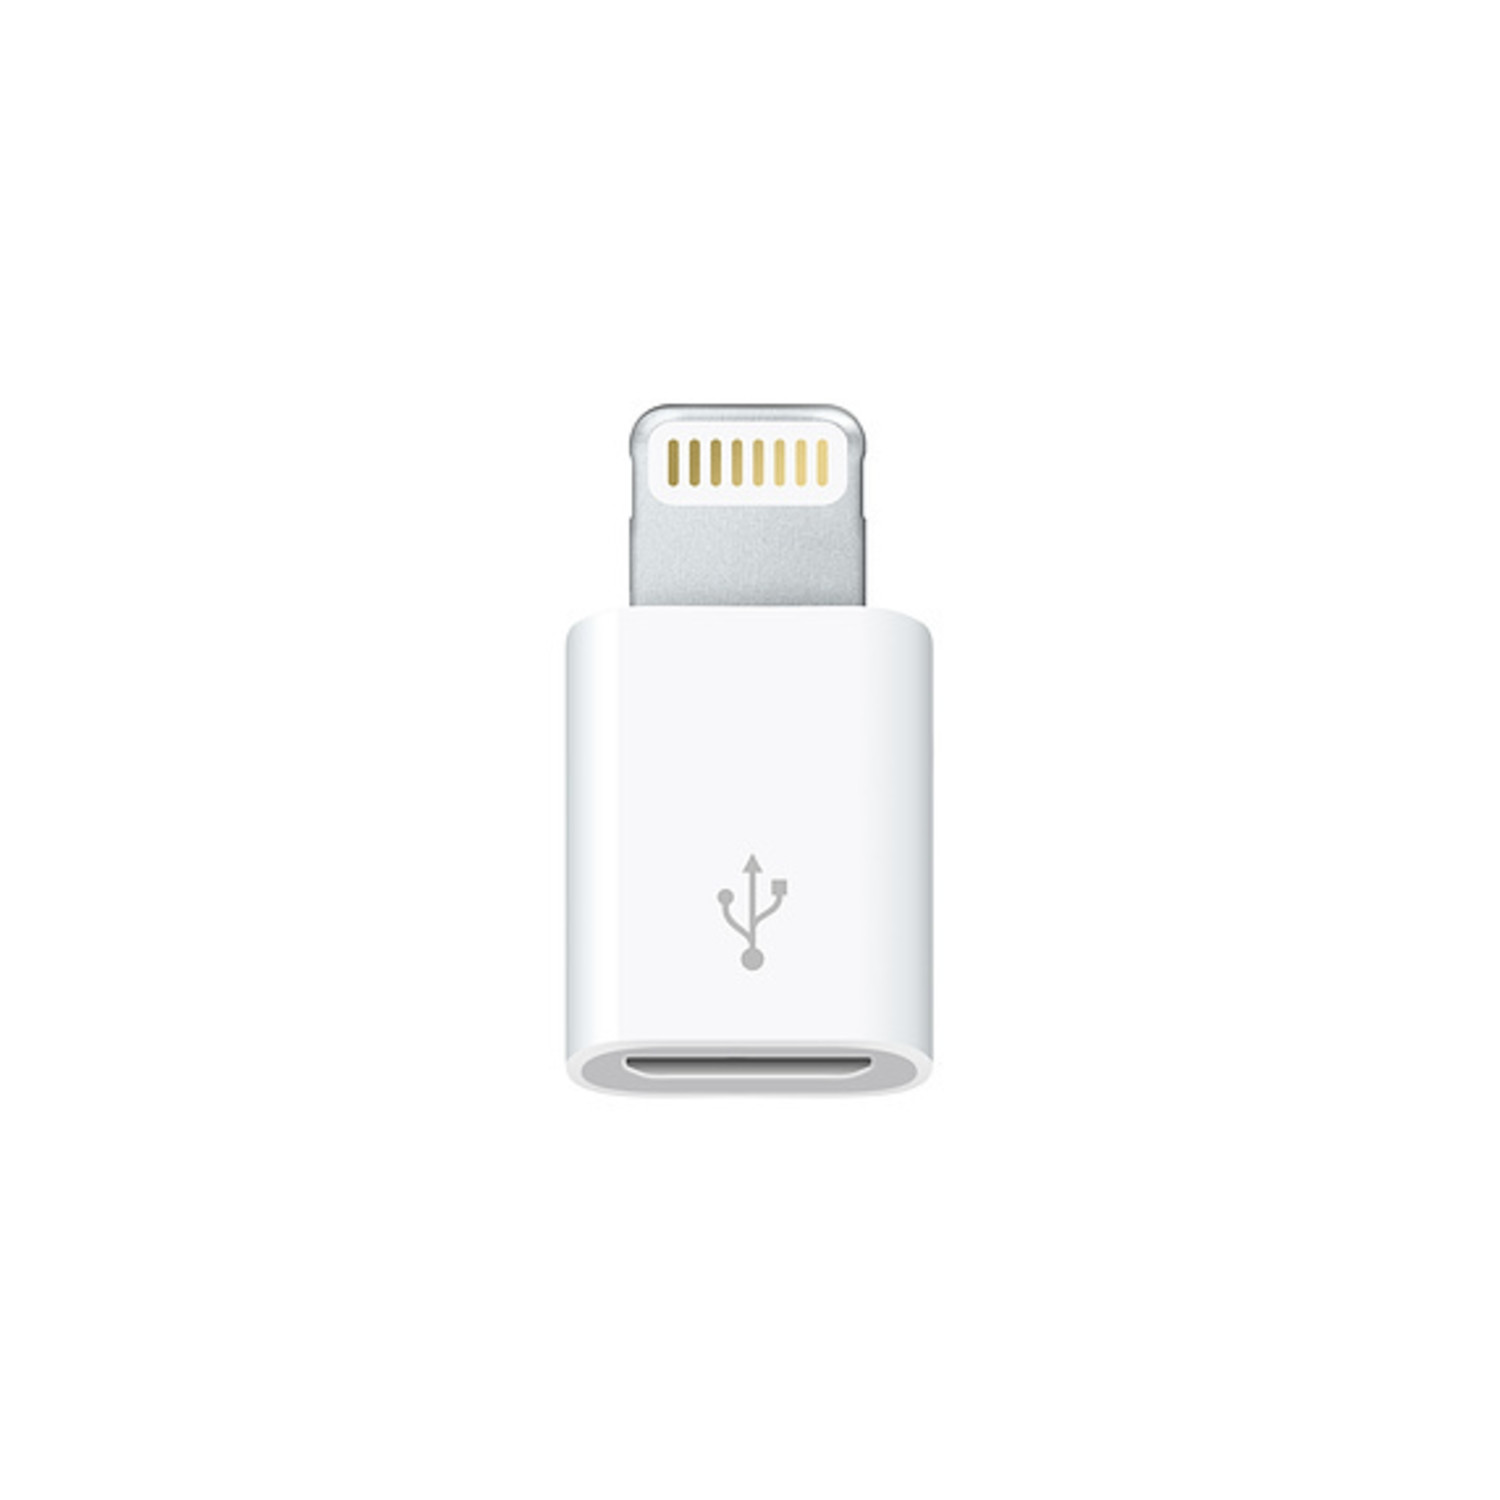 Adaptador Lightning - Micro Usb APPLE para iPhone 5